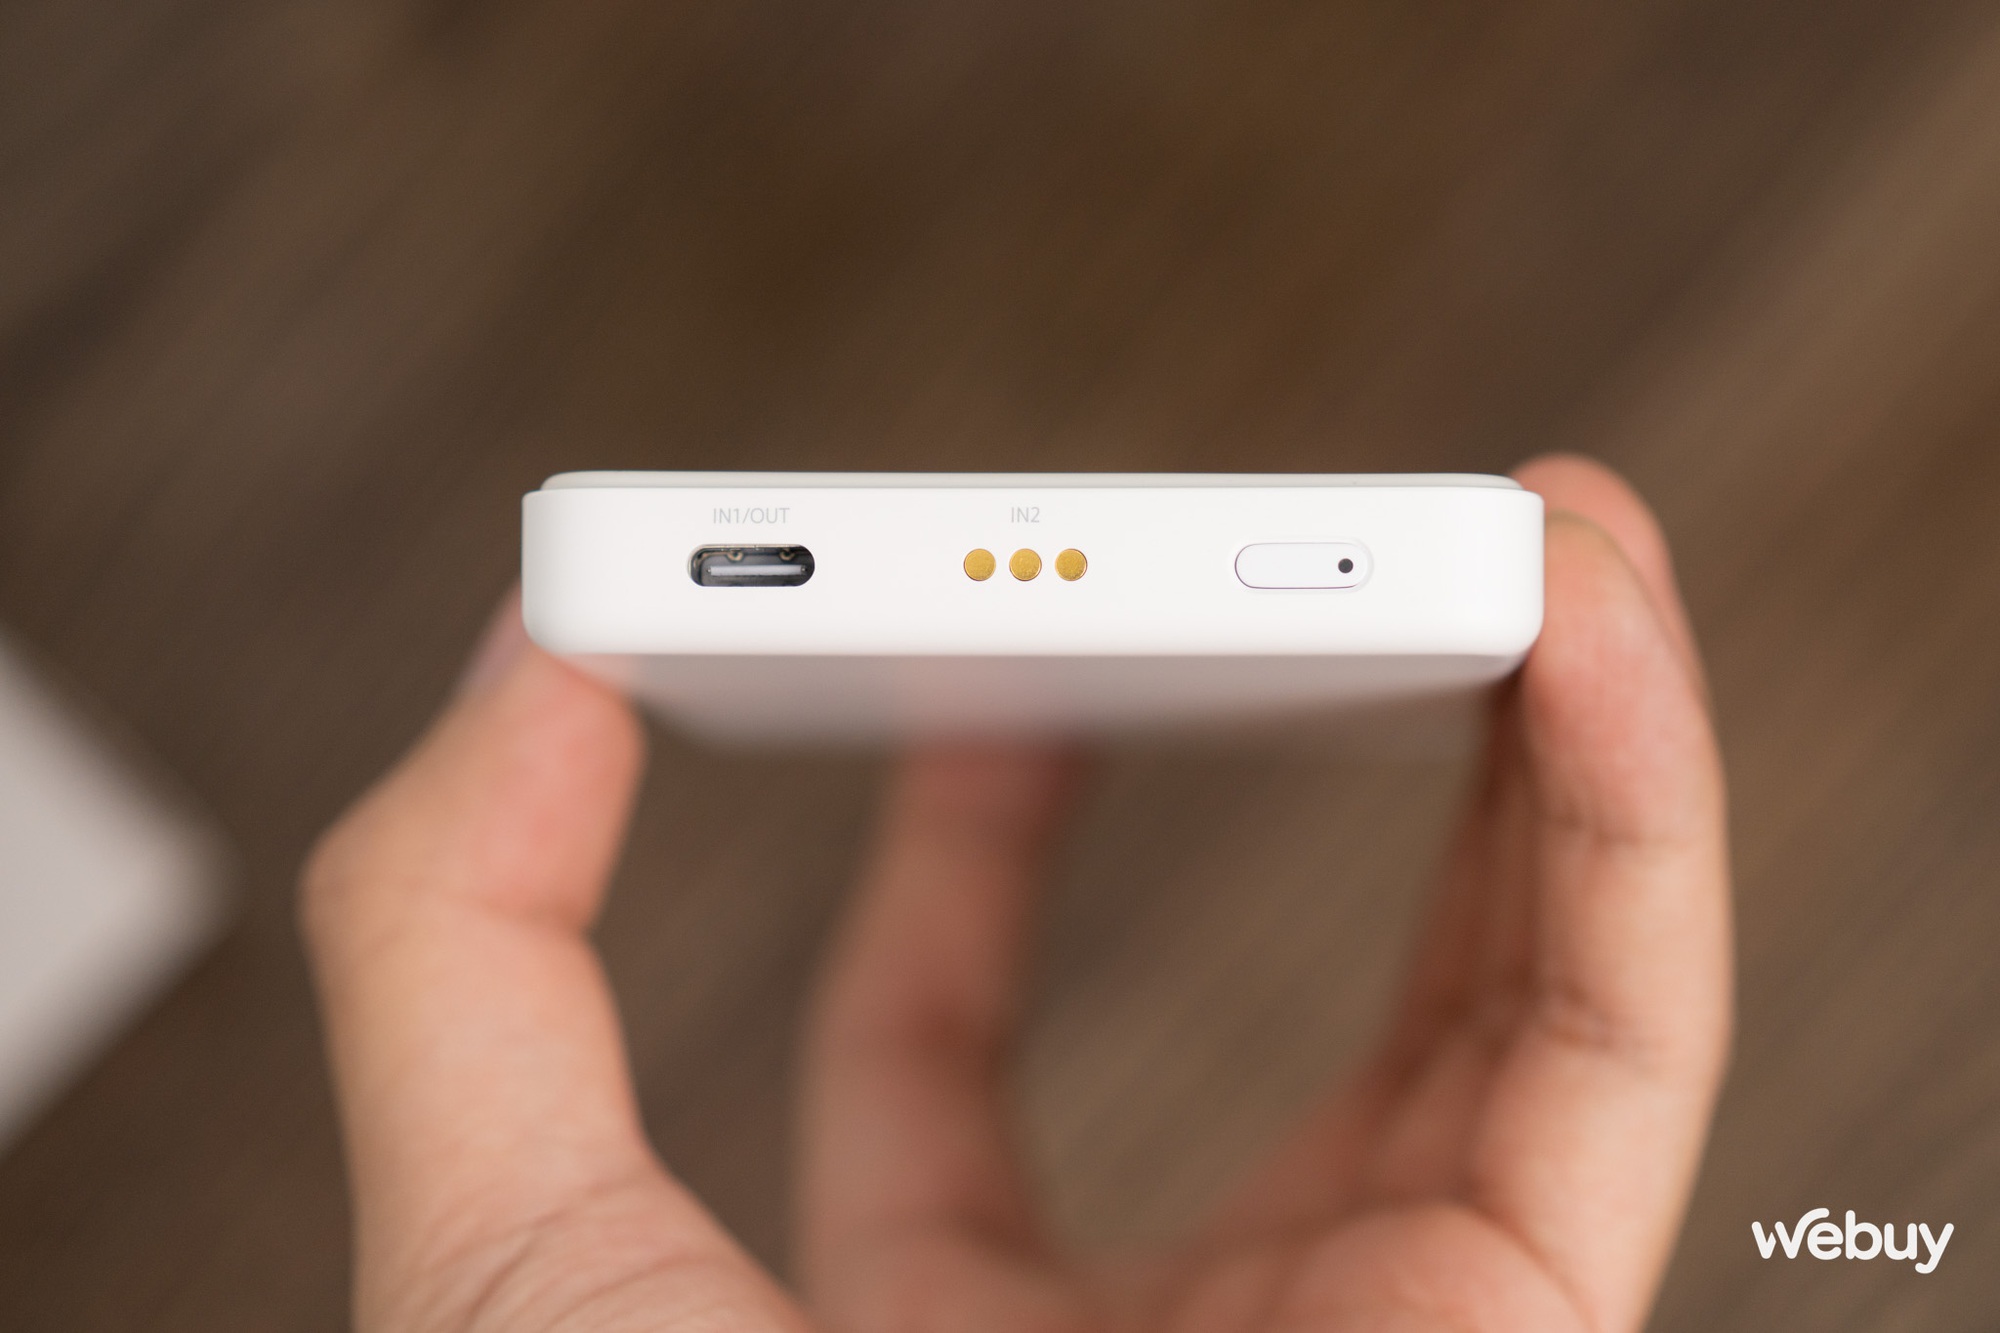 Pin dự phòng MagSafe Xiaomi cho iPhone: Thiết kế gọn nhẹ, dung lượng 5000mAh, giá chưa tới 700,000 đồng - Ảnh 5.